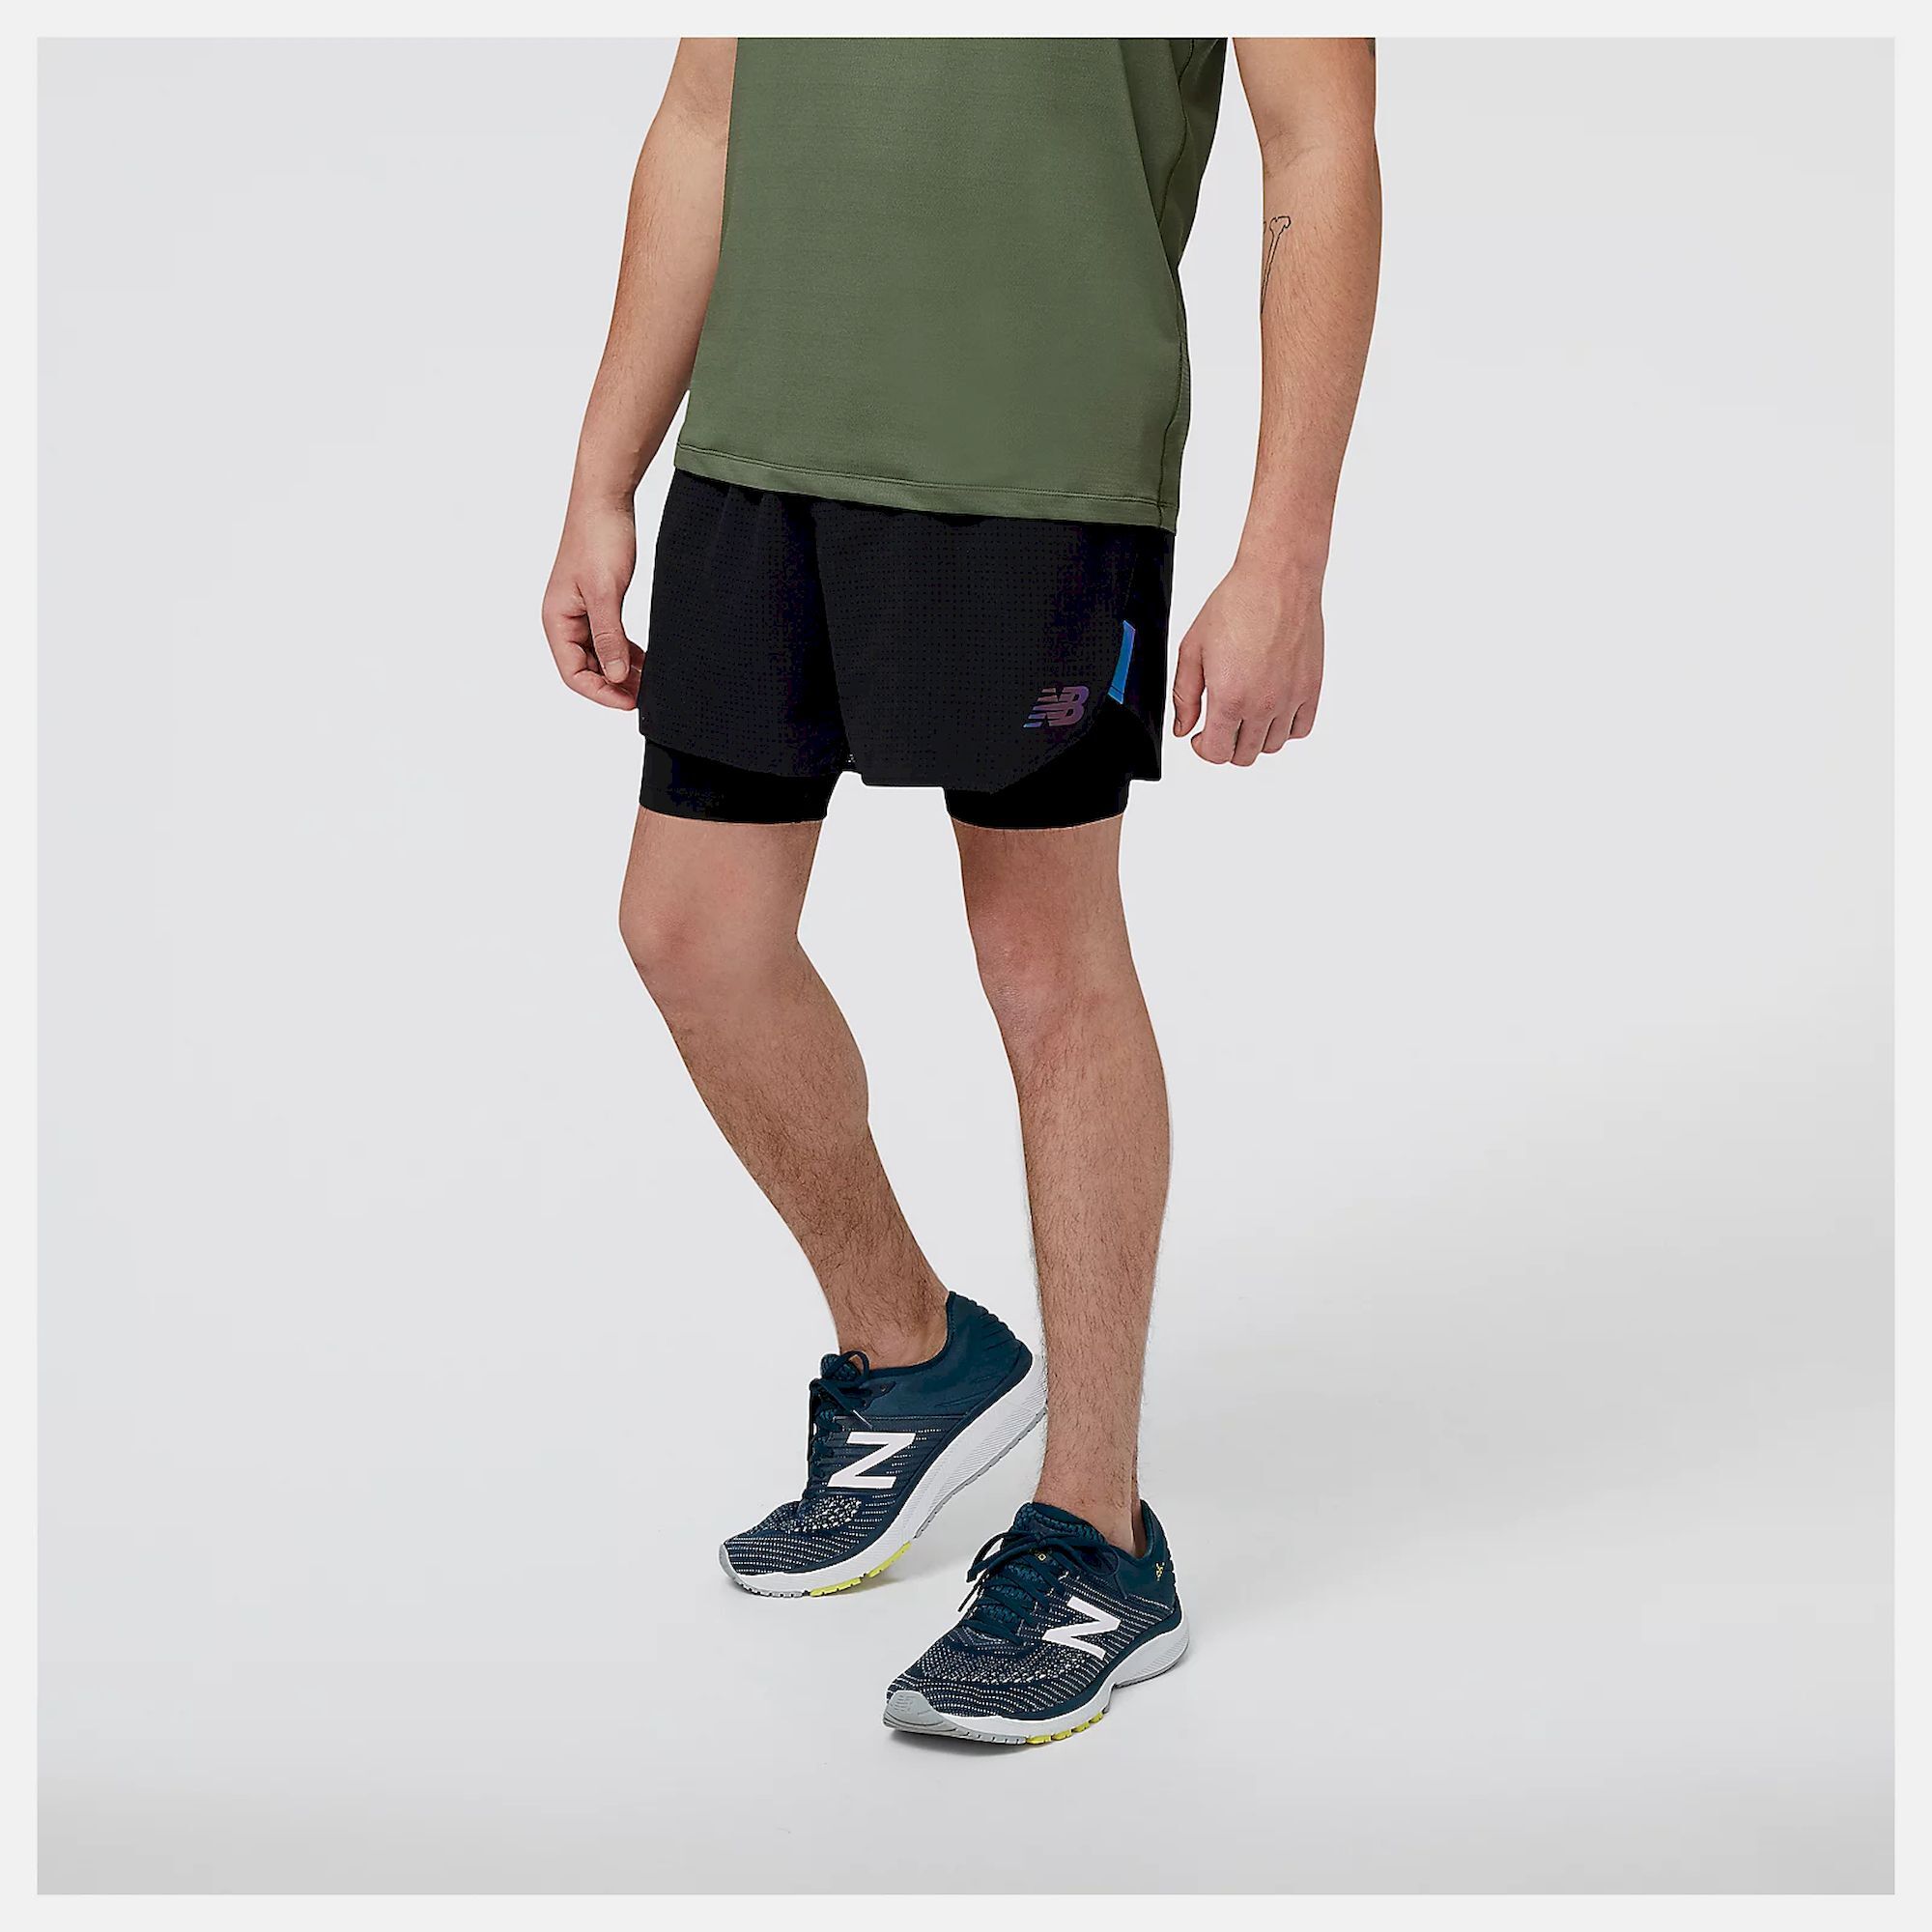 Men's Running Shorts - New Balance